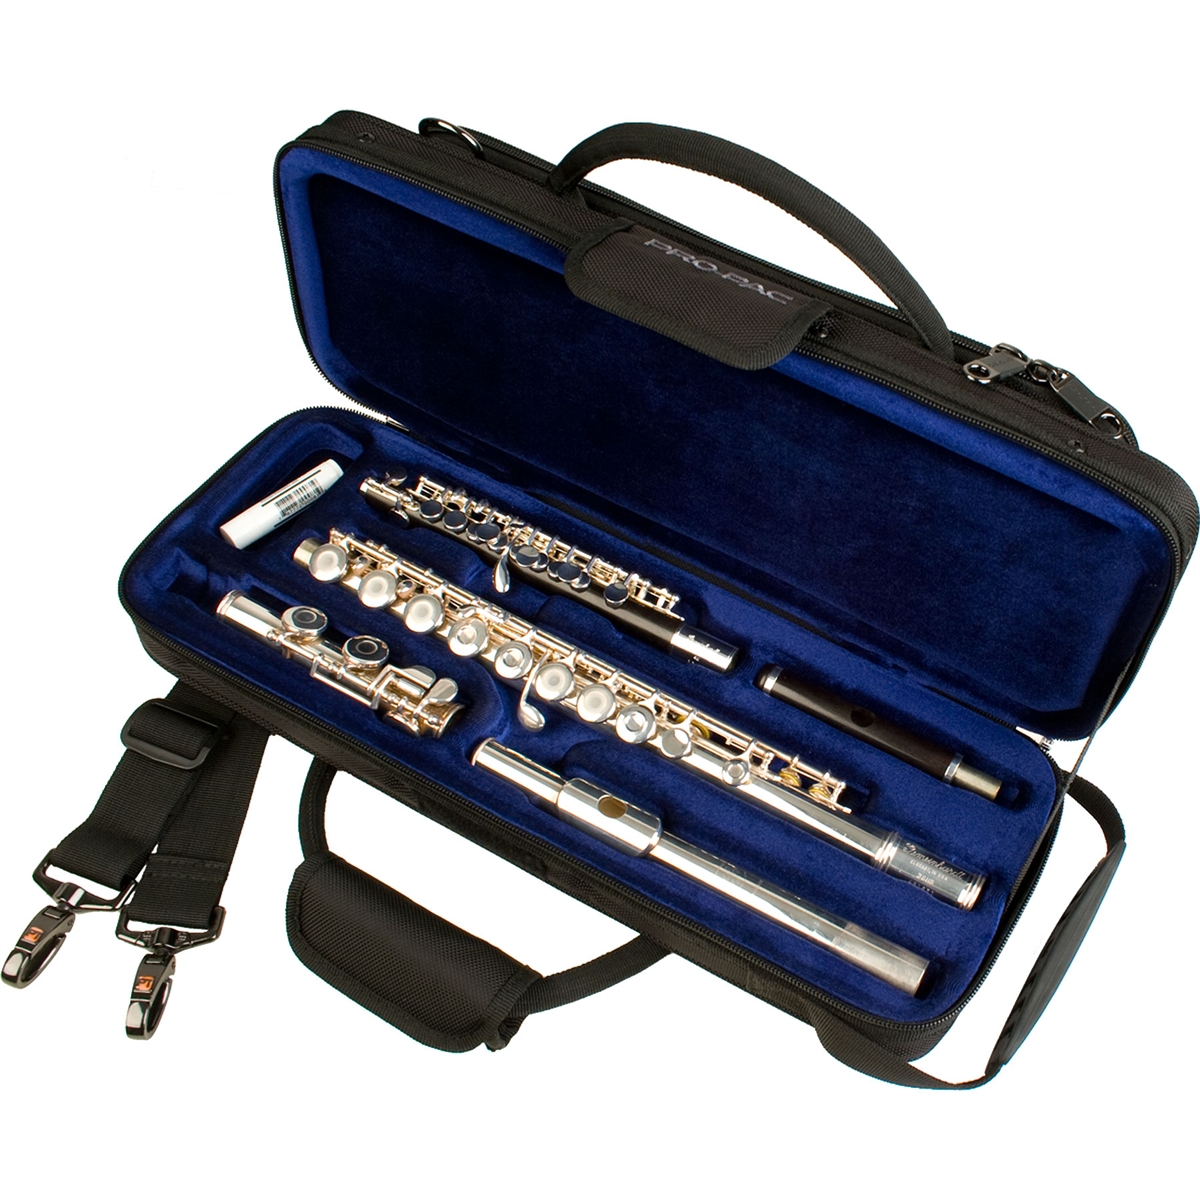 Protec PB308PICC Combi Case for Flute and Piccolo